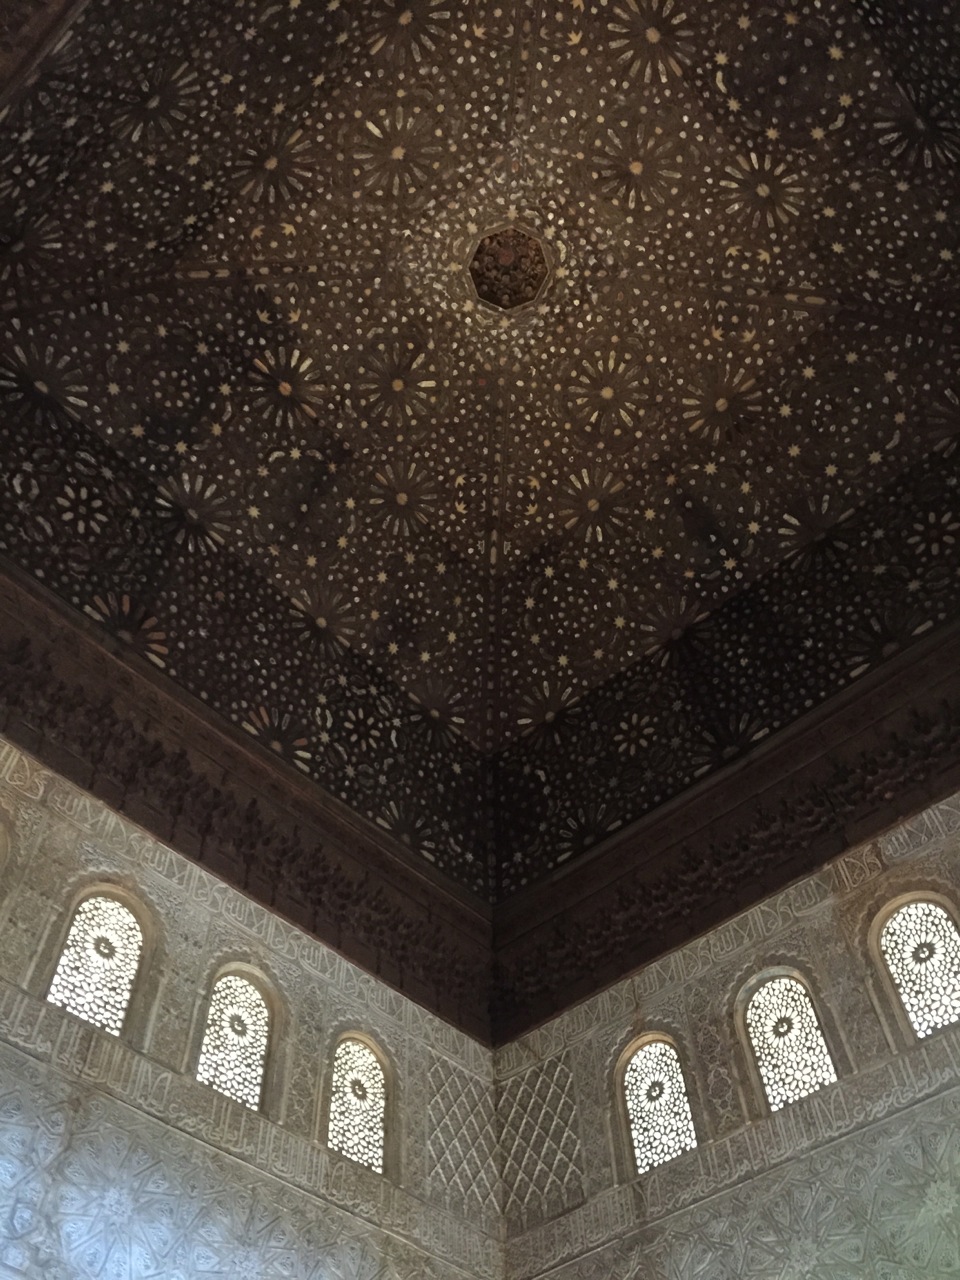 alhambra-ceiling-detail-stars.jpg